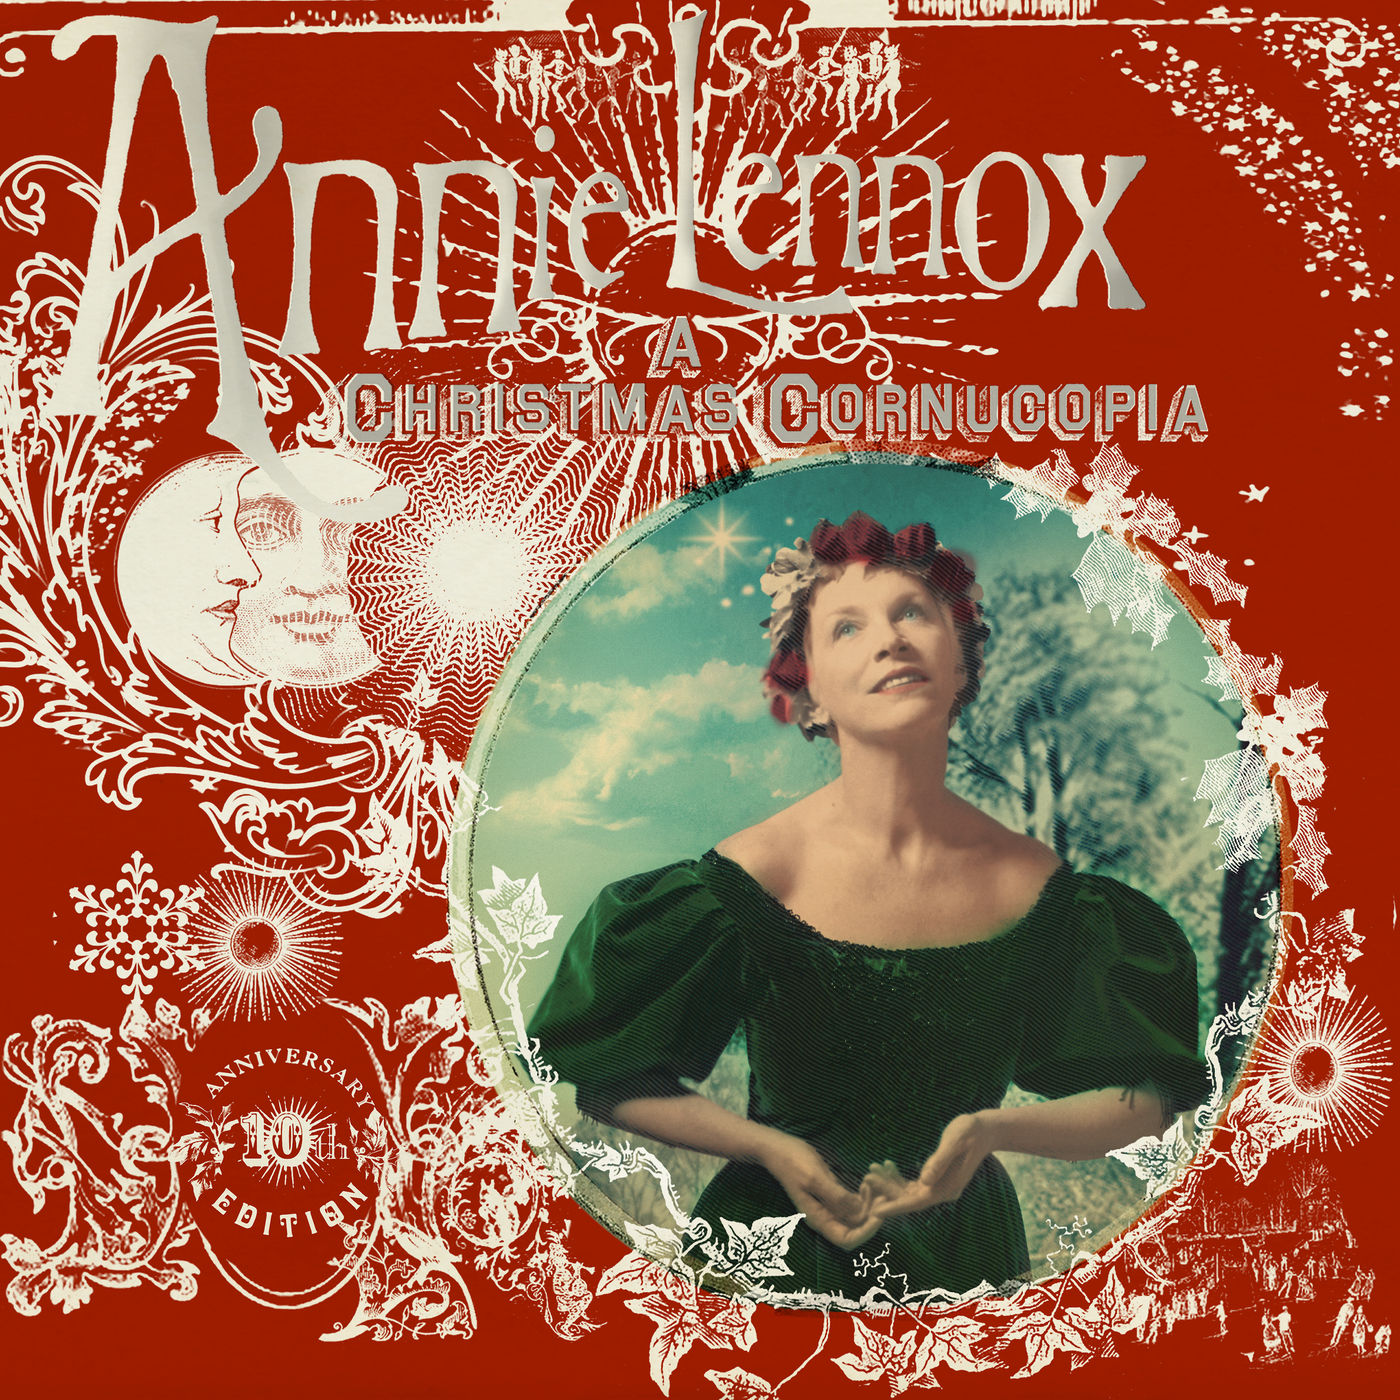 Annie Lennox - A Christmas Cornucopia (10th Anniversary Edition) (2020) [FLAC 24bit/96kHz]